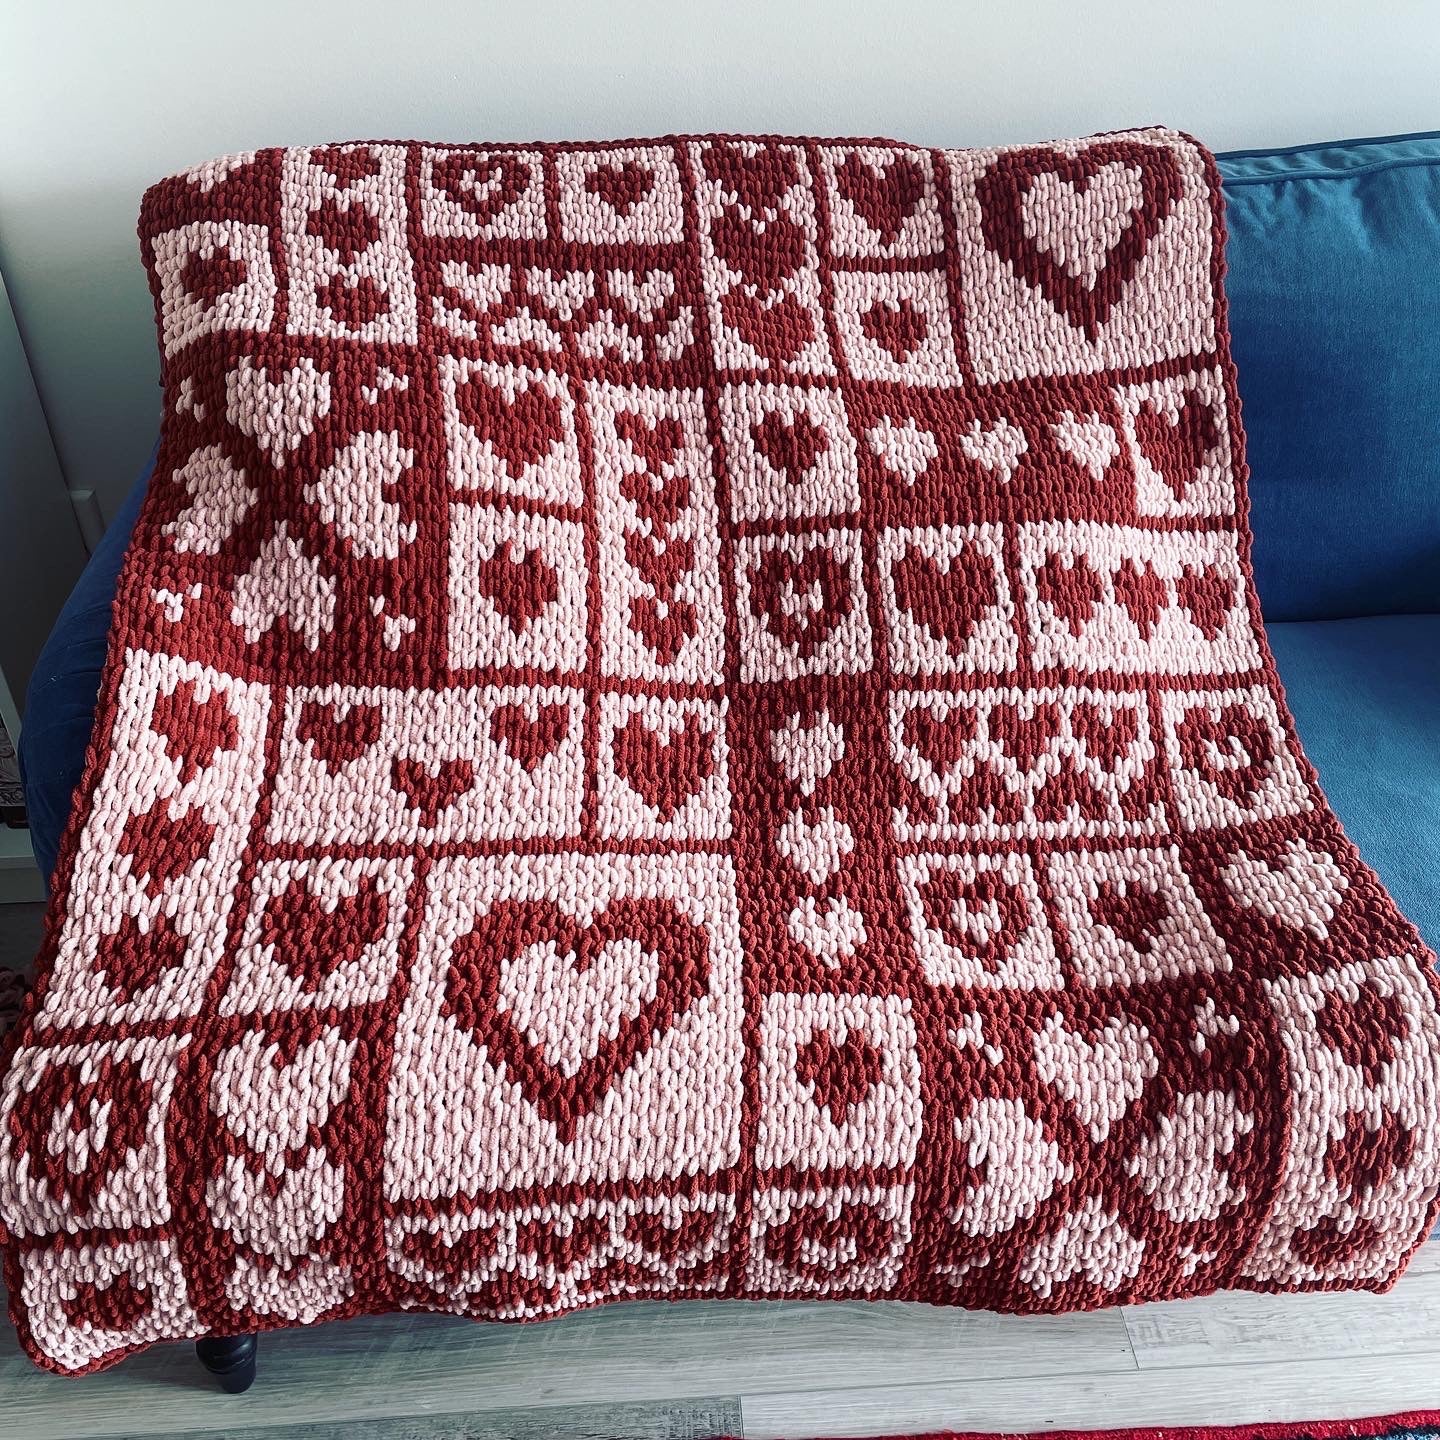 PATTERN: Love Hearts Tile Blanket - ILoveMyBlanket